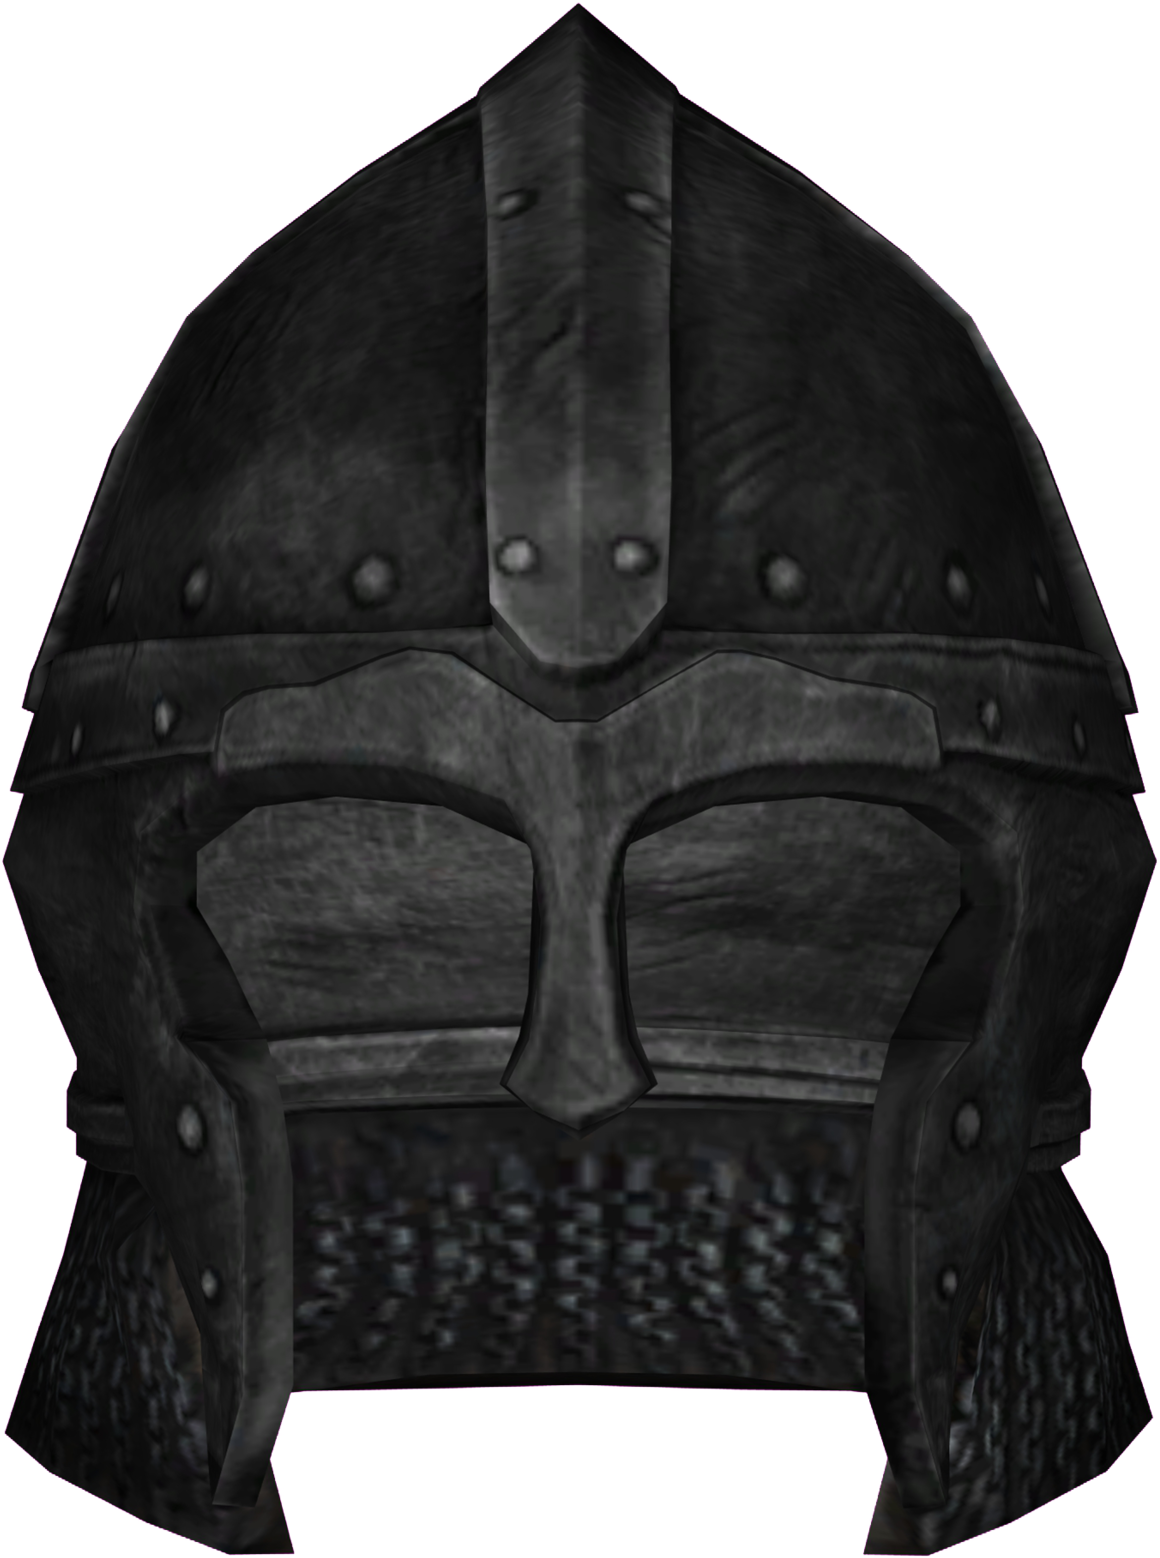 Skyrim Helmet Png 1160 X 1558